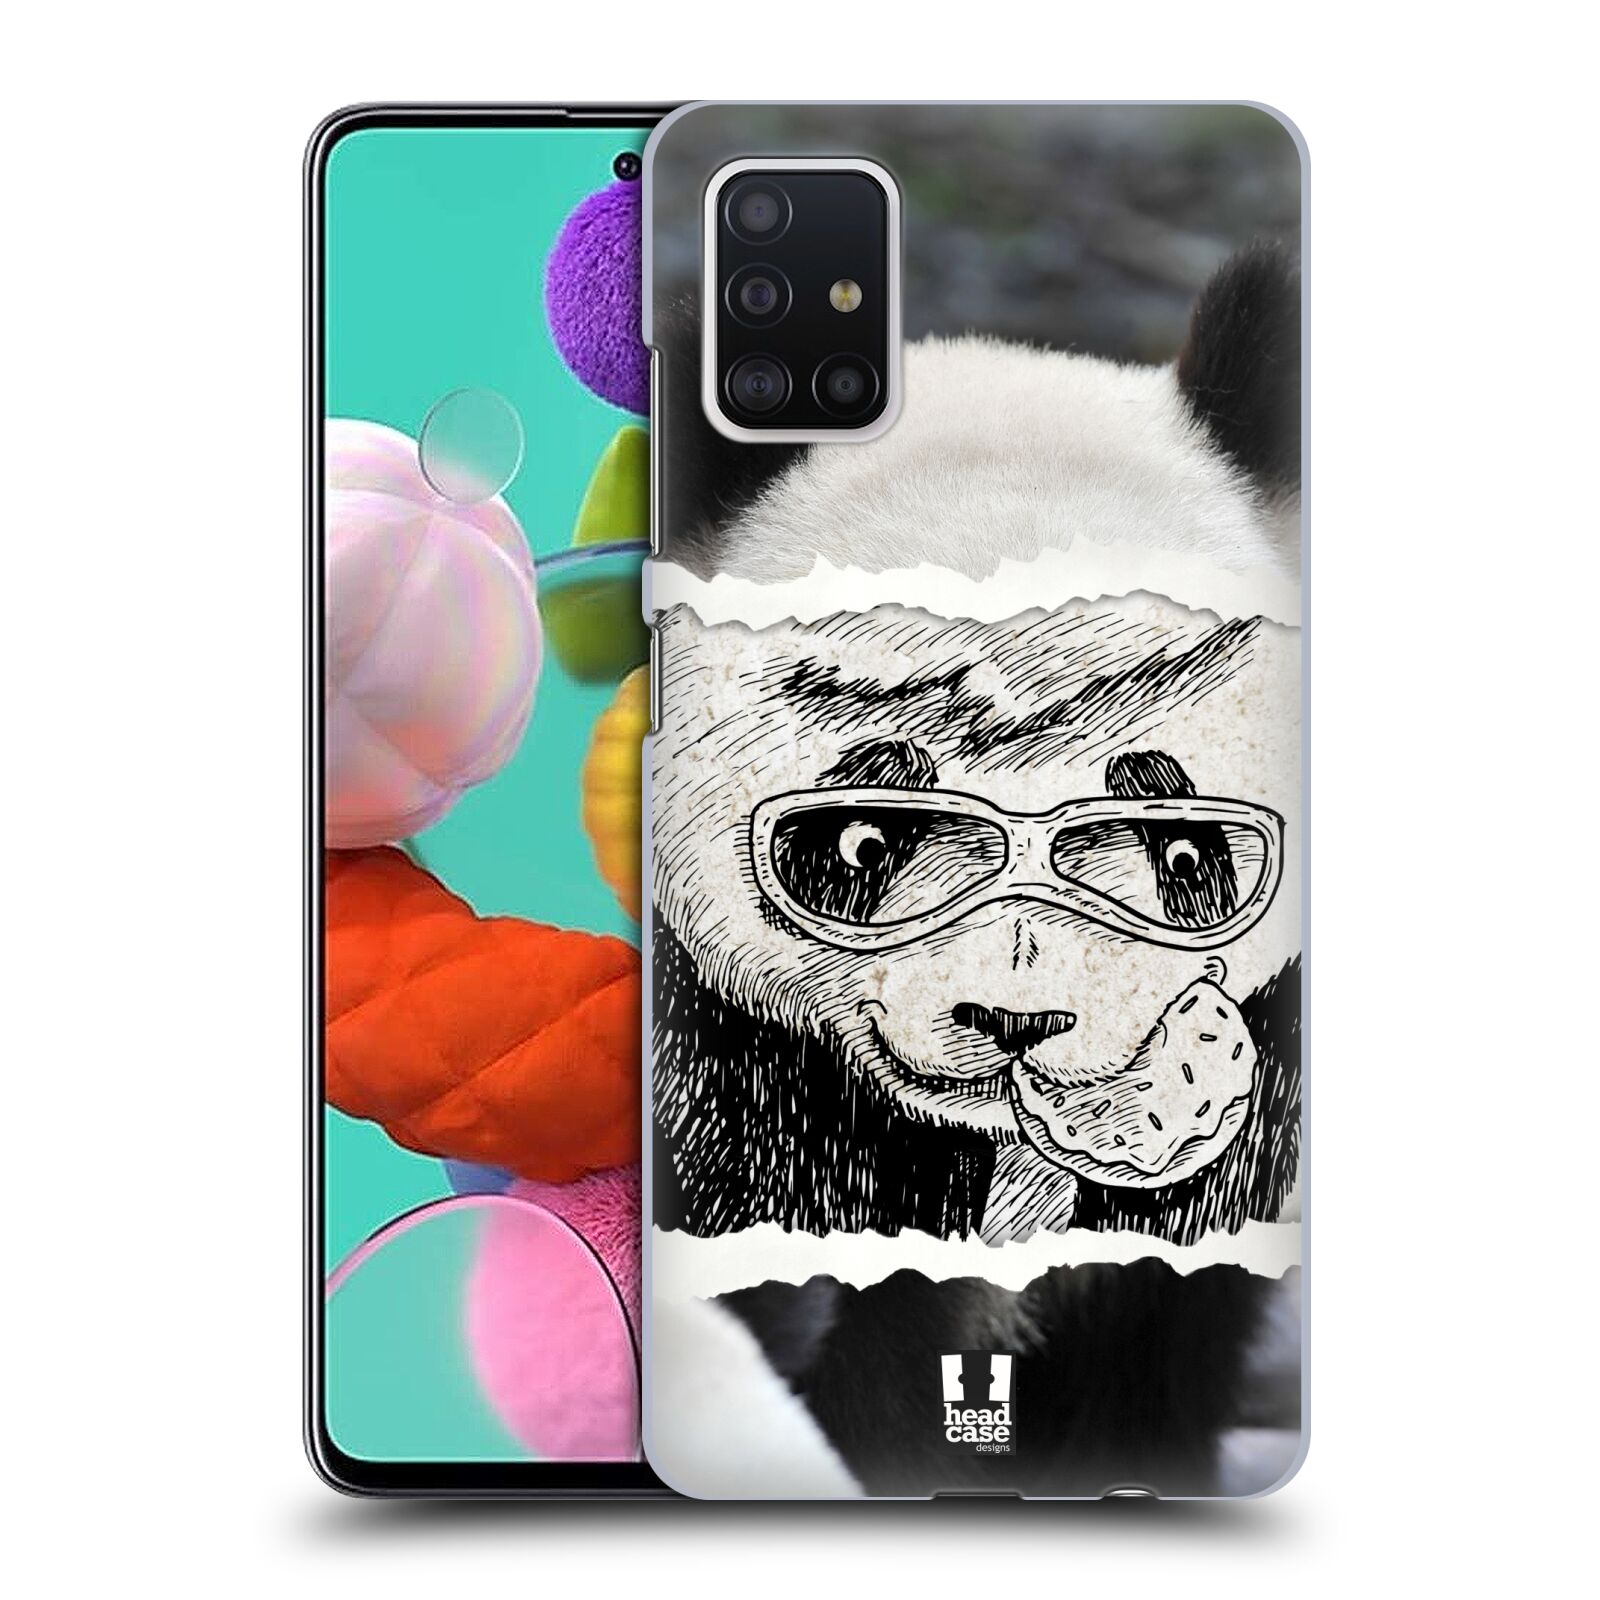 Pouzdro na mobil Samsung Galaxy A51 - HEAD CASE - vzor zvířata koláž roztomilá panda